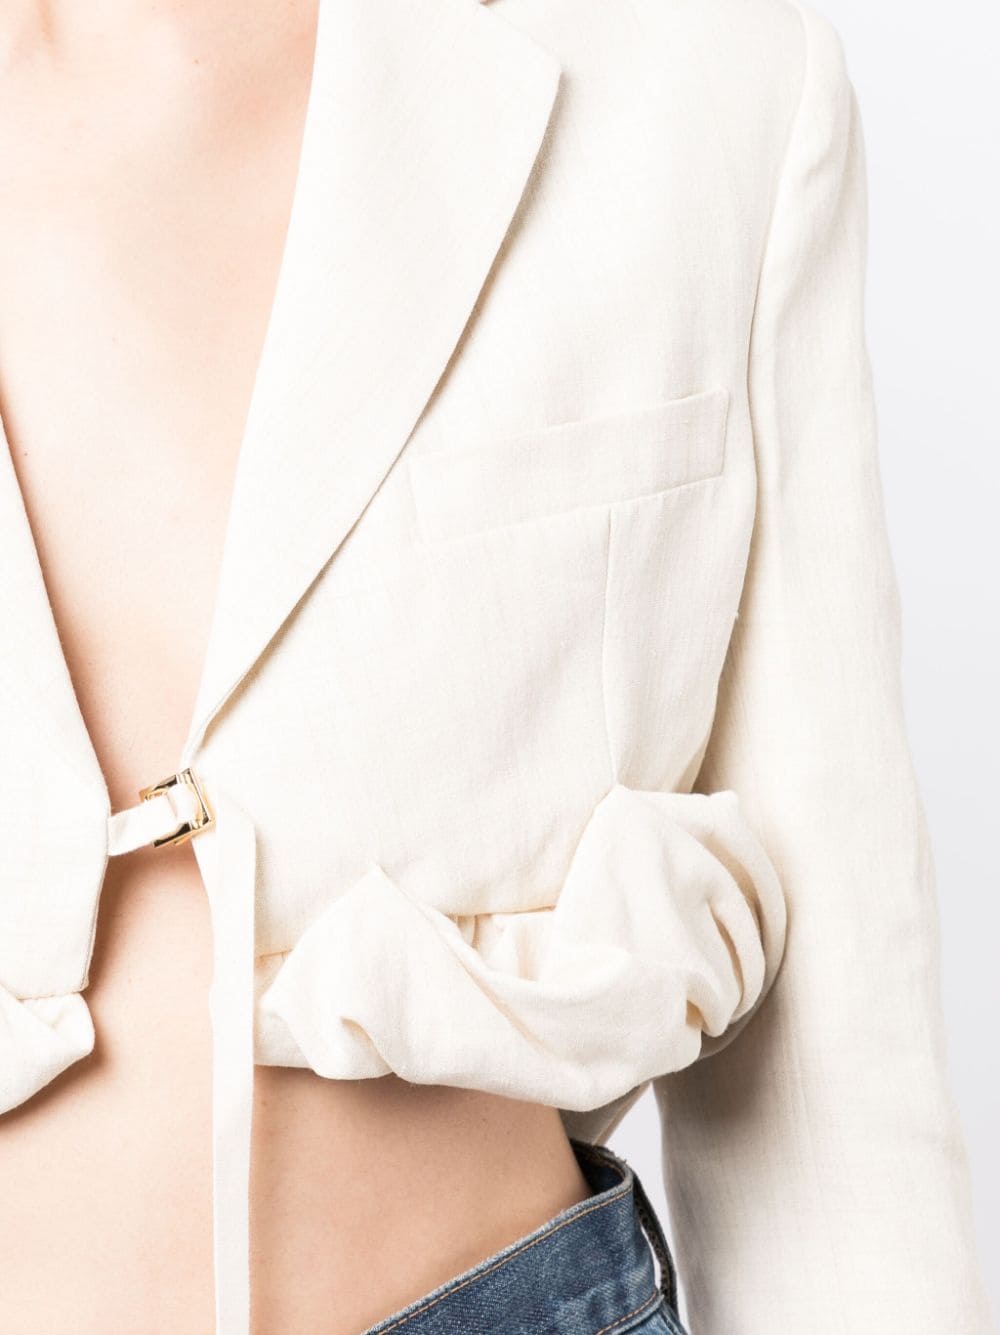 Áo blazer dài tay phom dán ngực Jacquemus FW23 cho phụ nữ